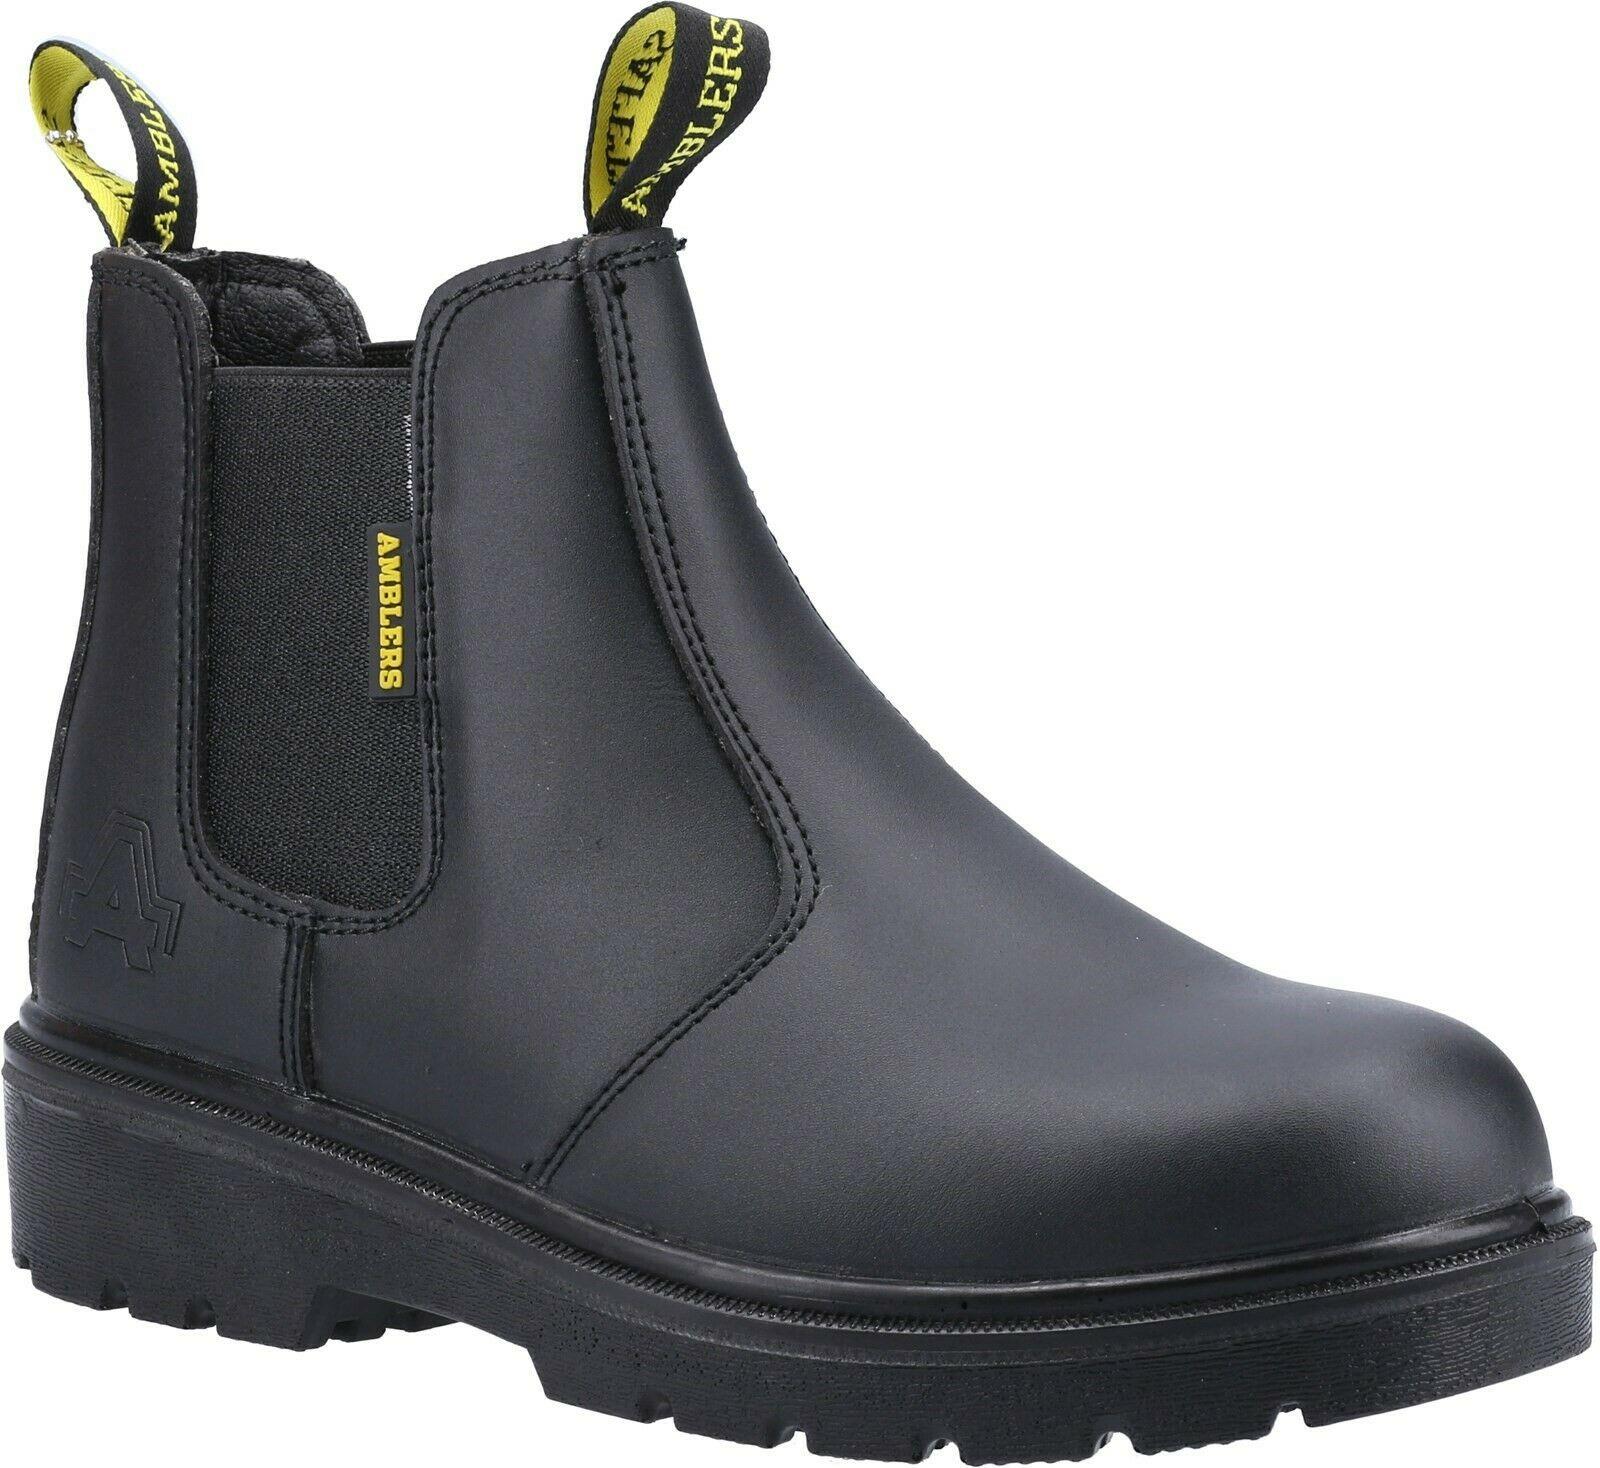 Amblers SBP black leather steel toe/midsole safety dealer work boot #FS116